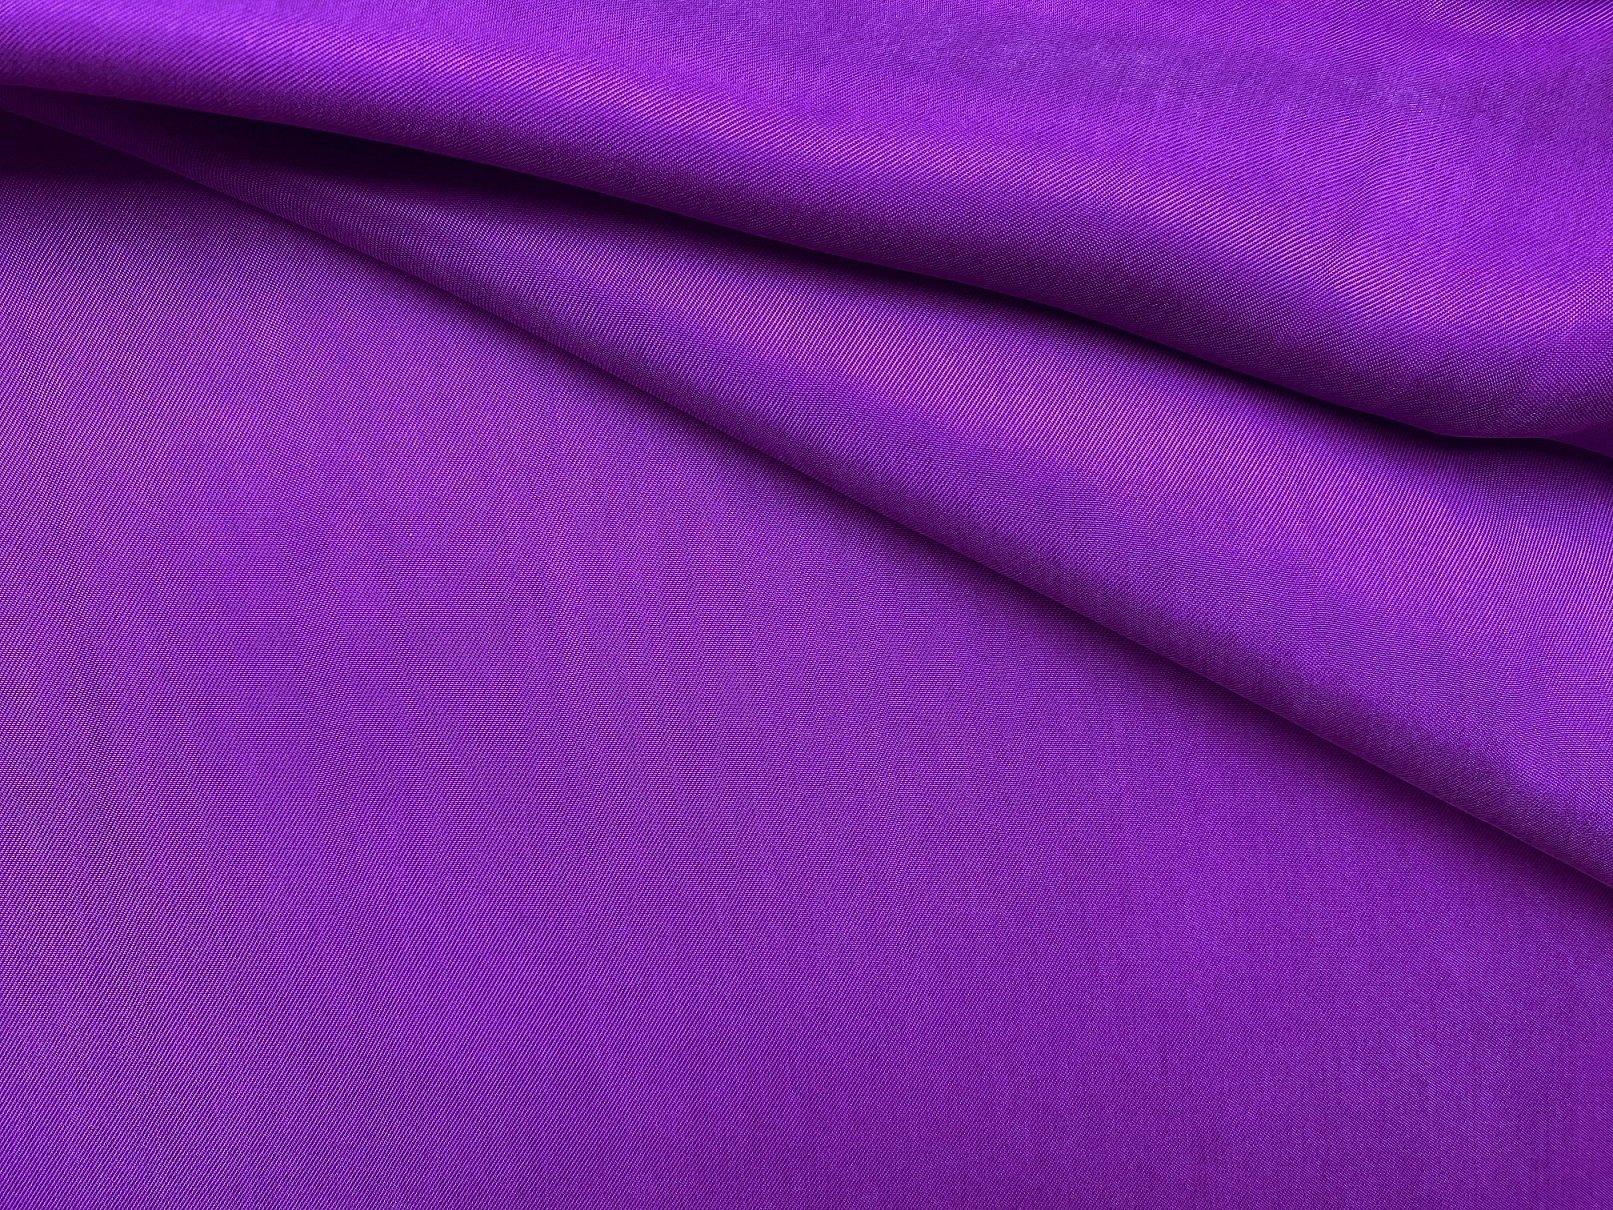 Ткань Вискоза  свекольного  цвета однотонная 17330 1